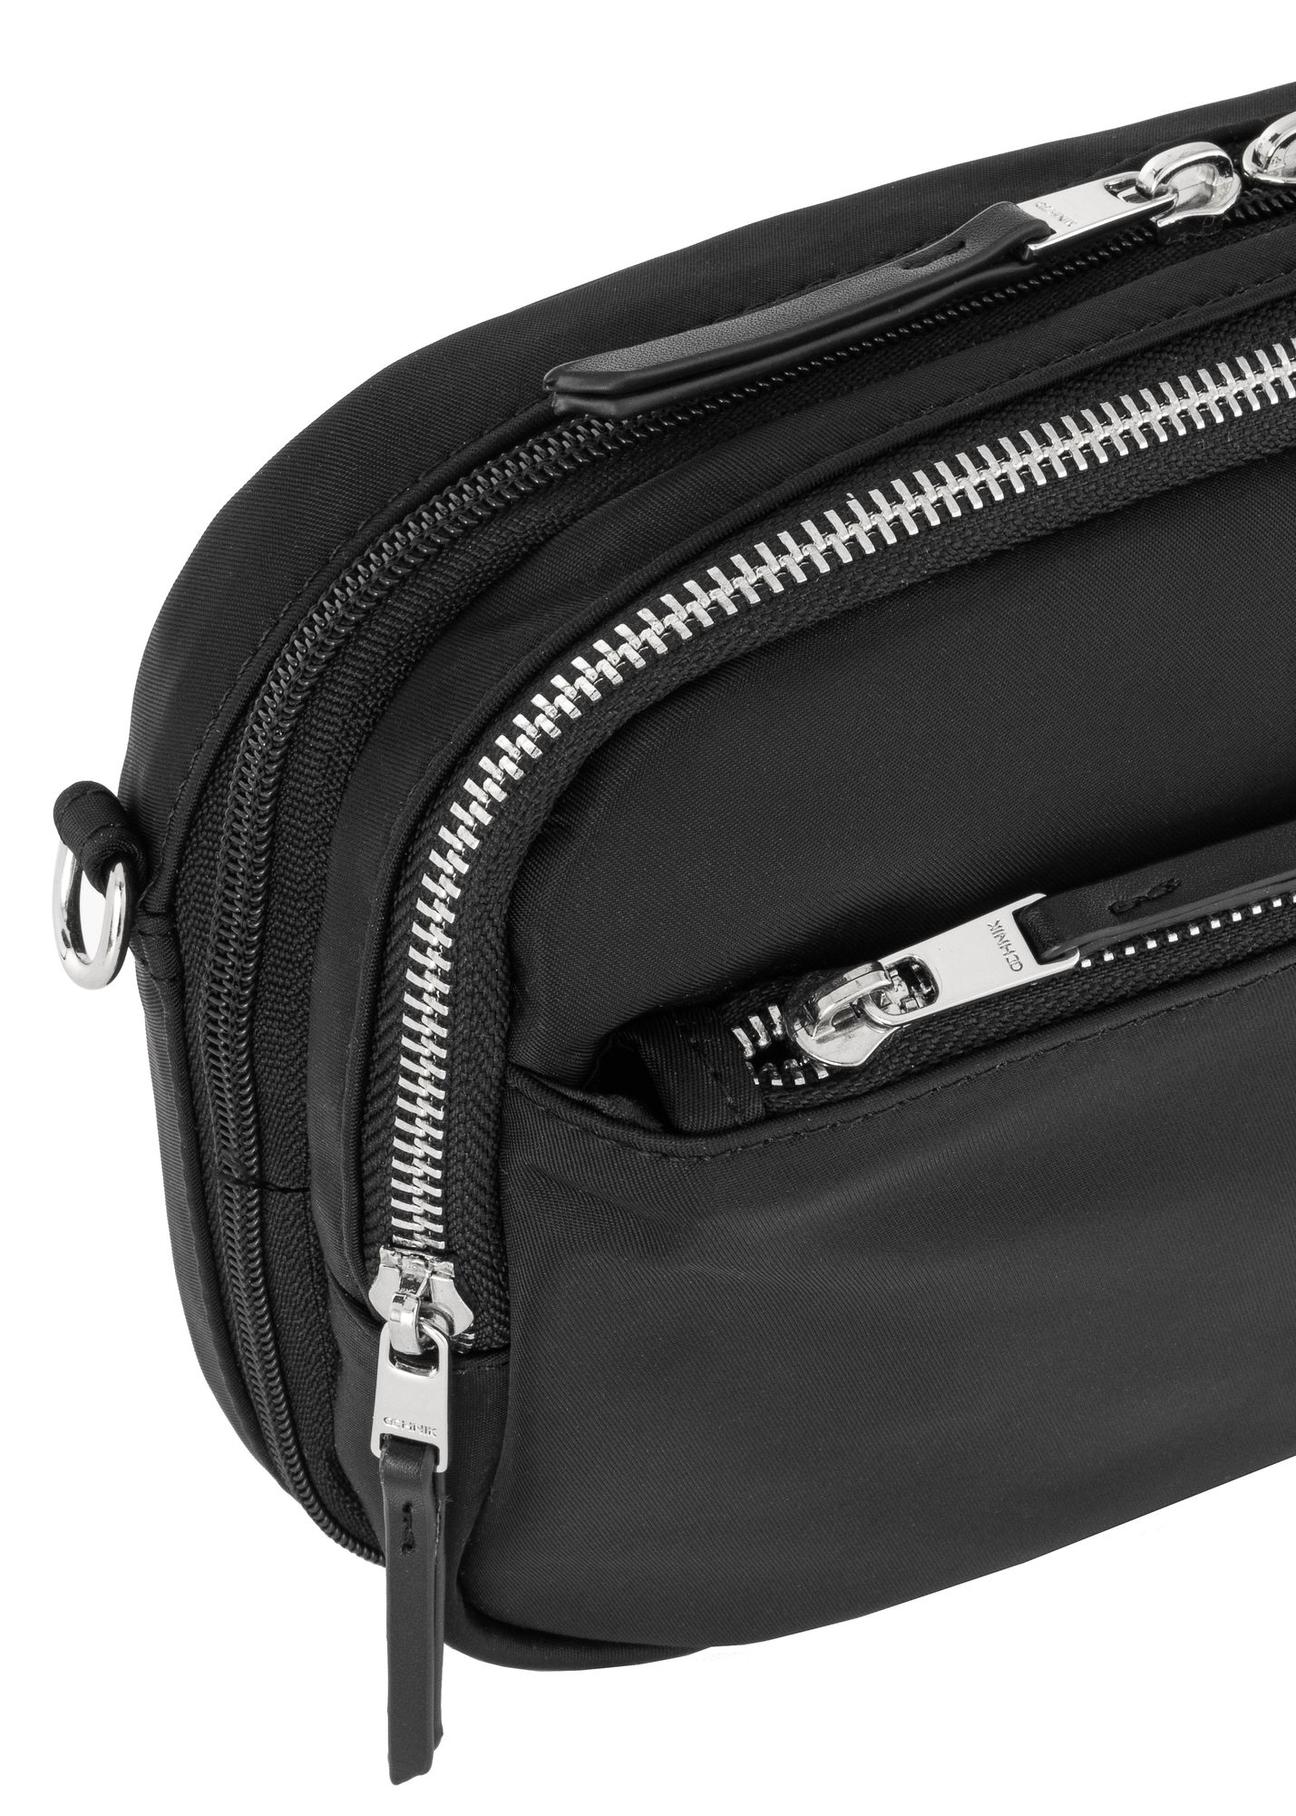 Czarny składany plecak i torba 2 w 1 damski TOREN-0275-99(W24)